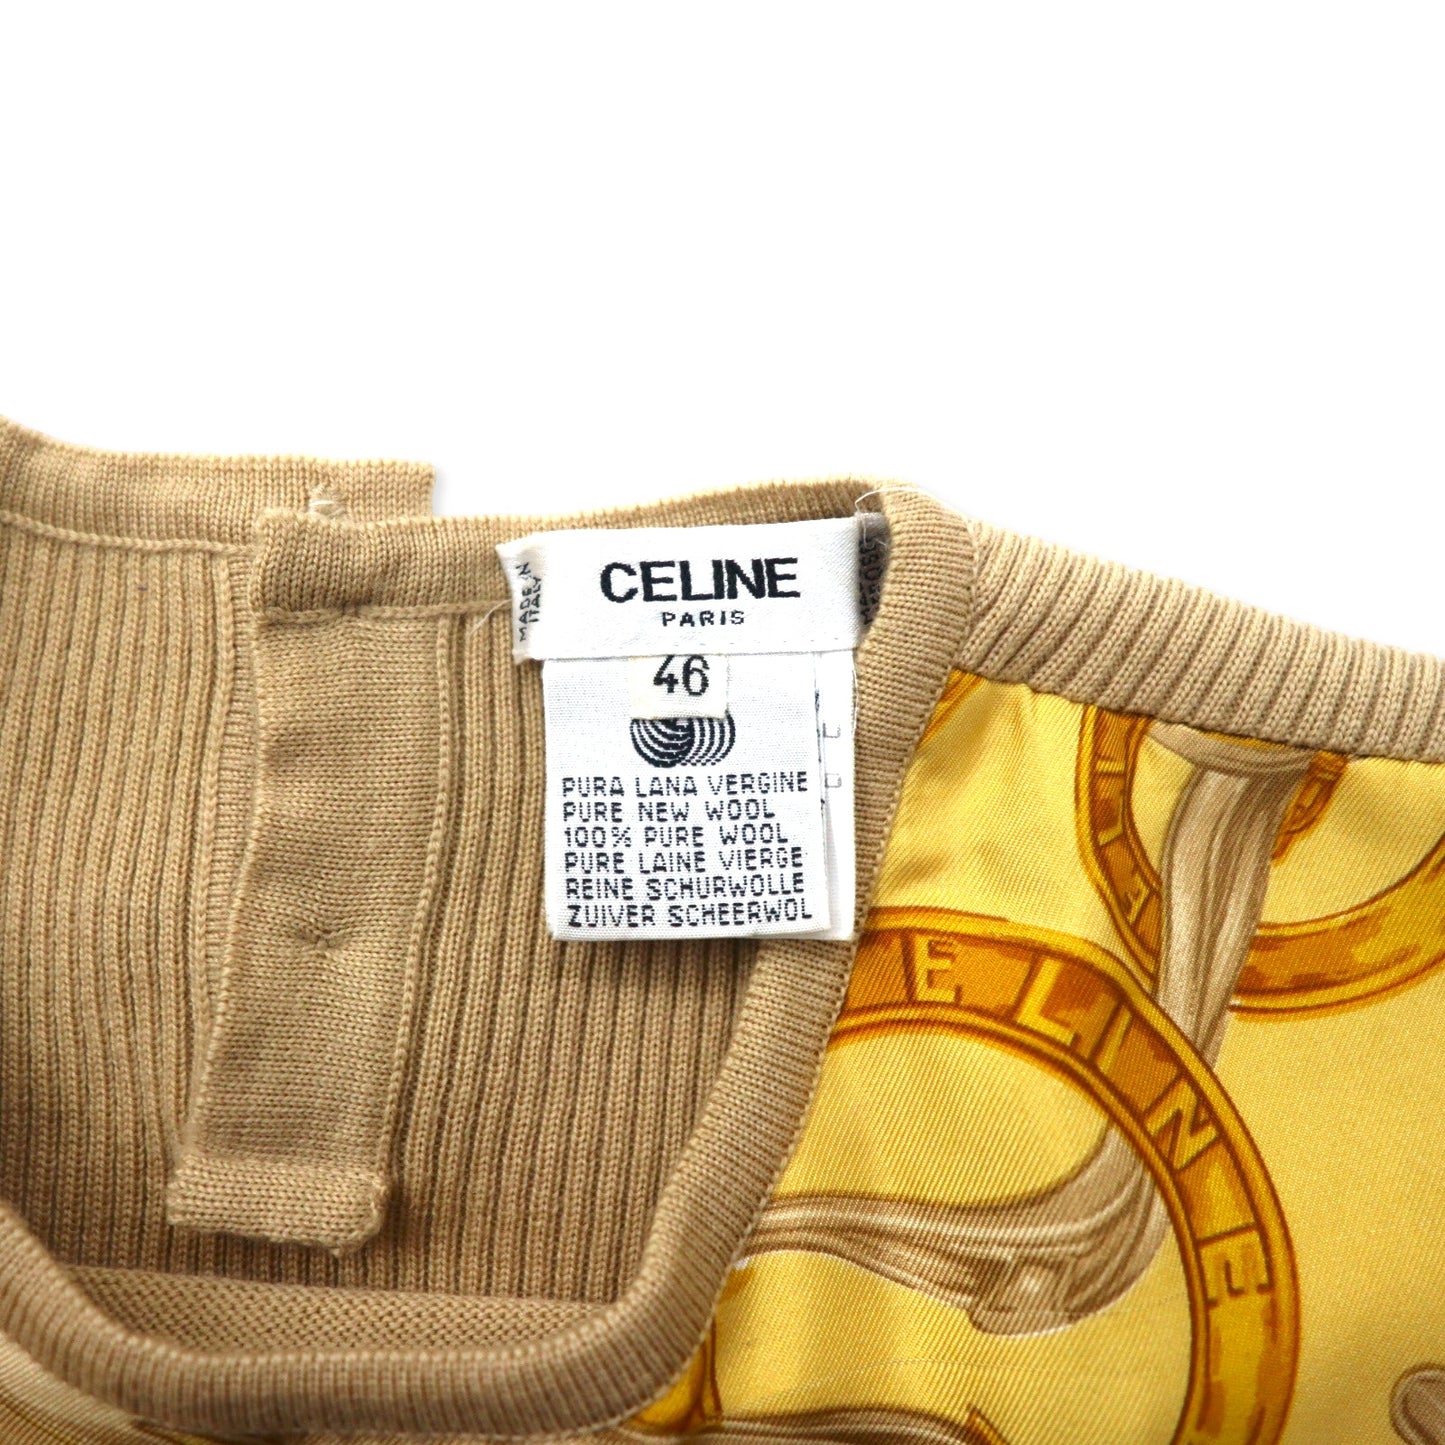 CELINE シルク切り替え ニット セーター 46 ベージュ ウール スカーフ柄 イタリア製